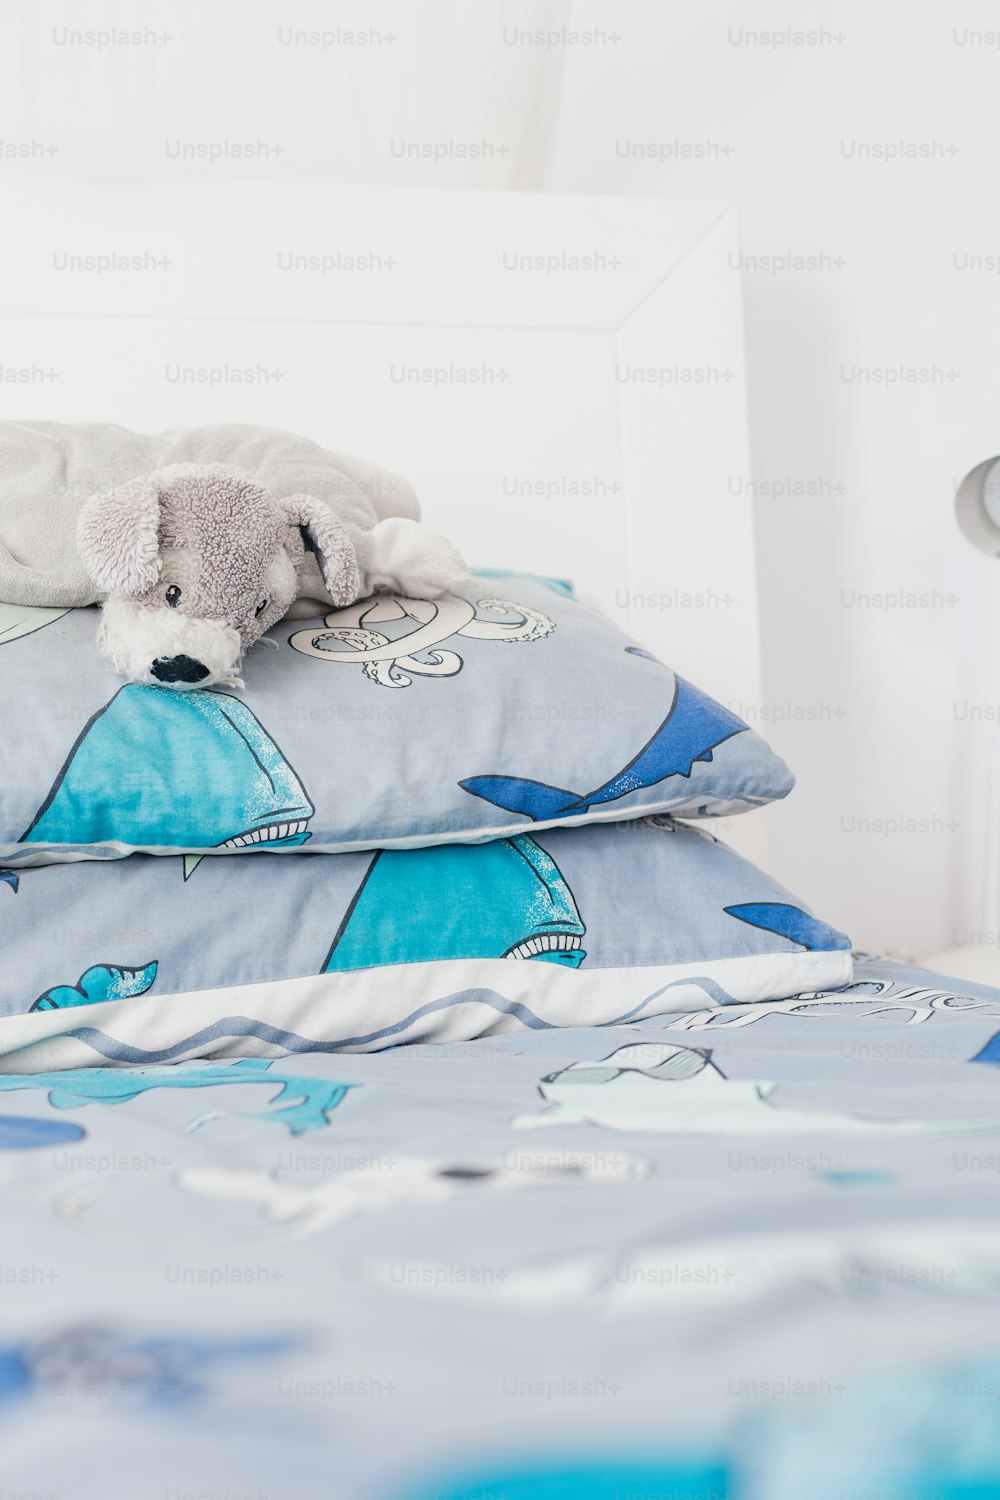 un animal de peluche acostado sobre una almohada en una cama